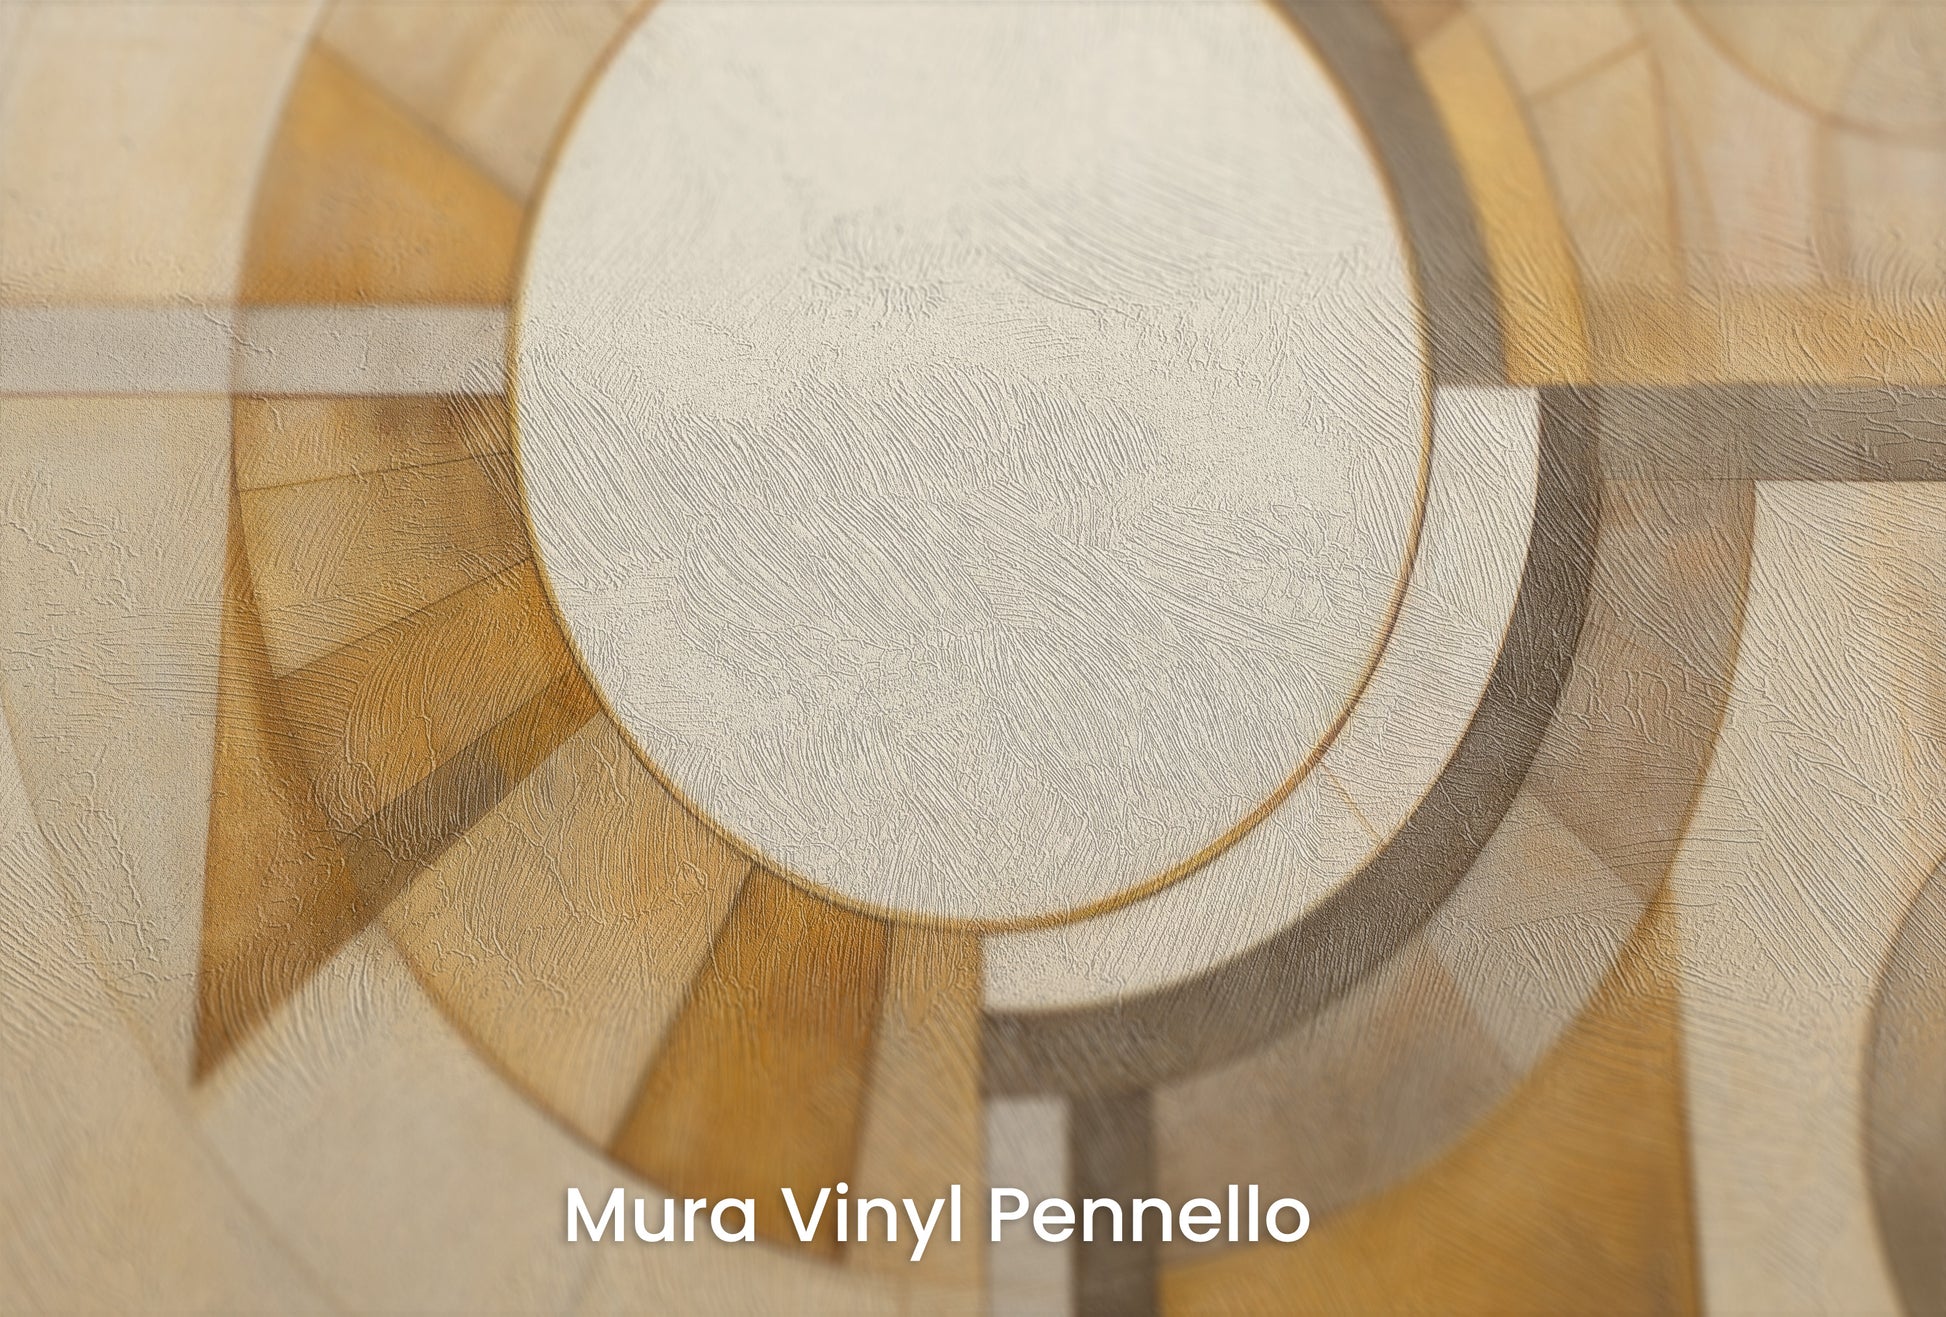 Zbliżenie na artystyczną fototapetę o nazwie ASTRAL CIRCULARITY na podłożu Mura Vinyl Pennello - faktura pociągnięć pędzla malarskiego.